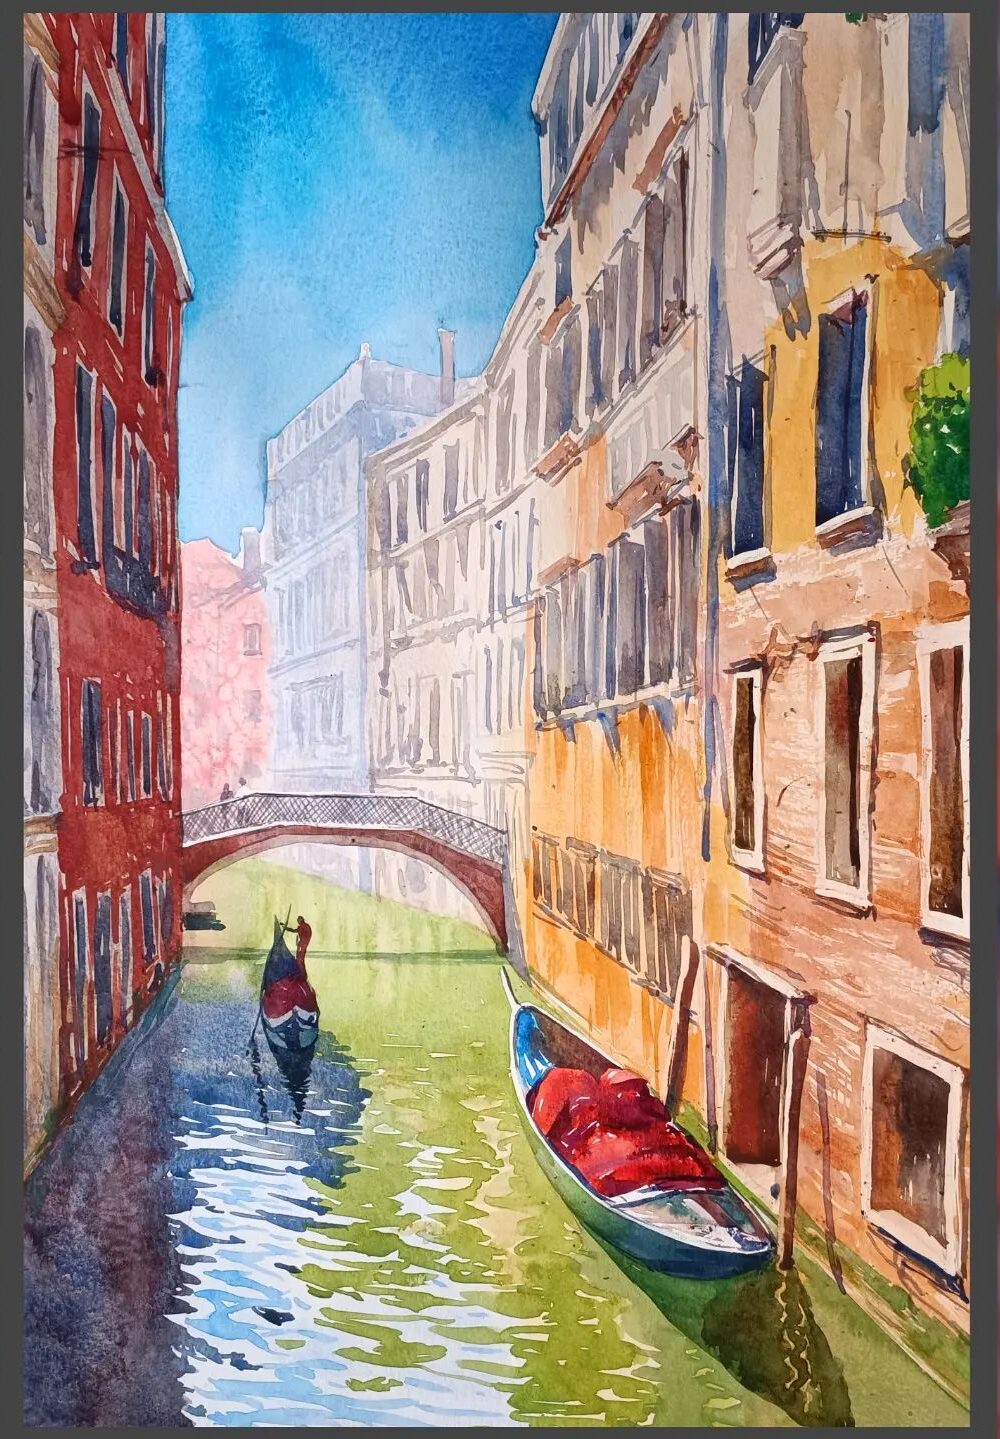 Venecia (composicion, teoria de color y perspectiva)